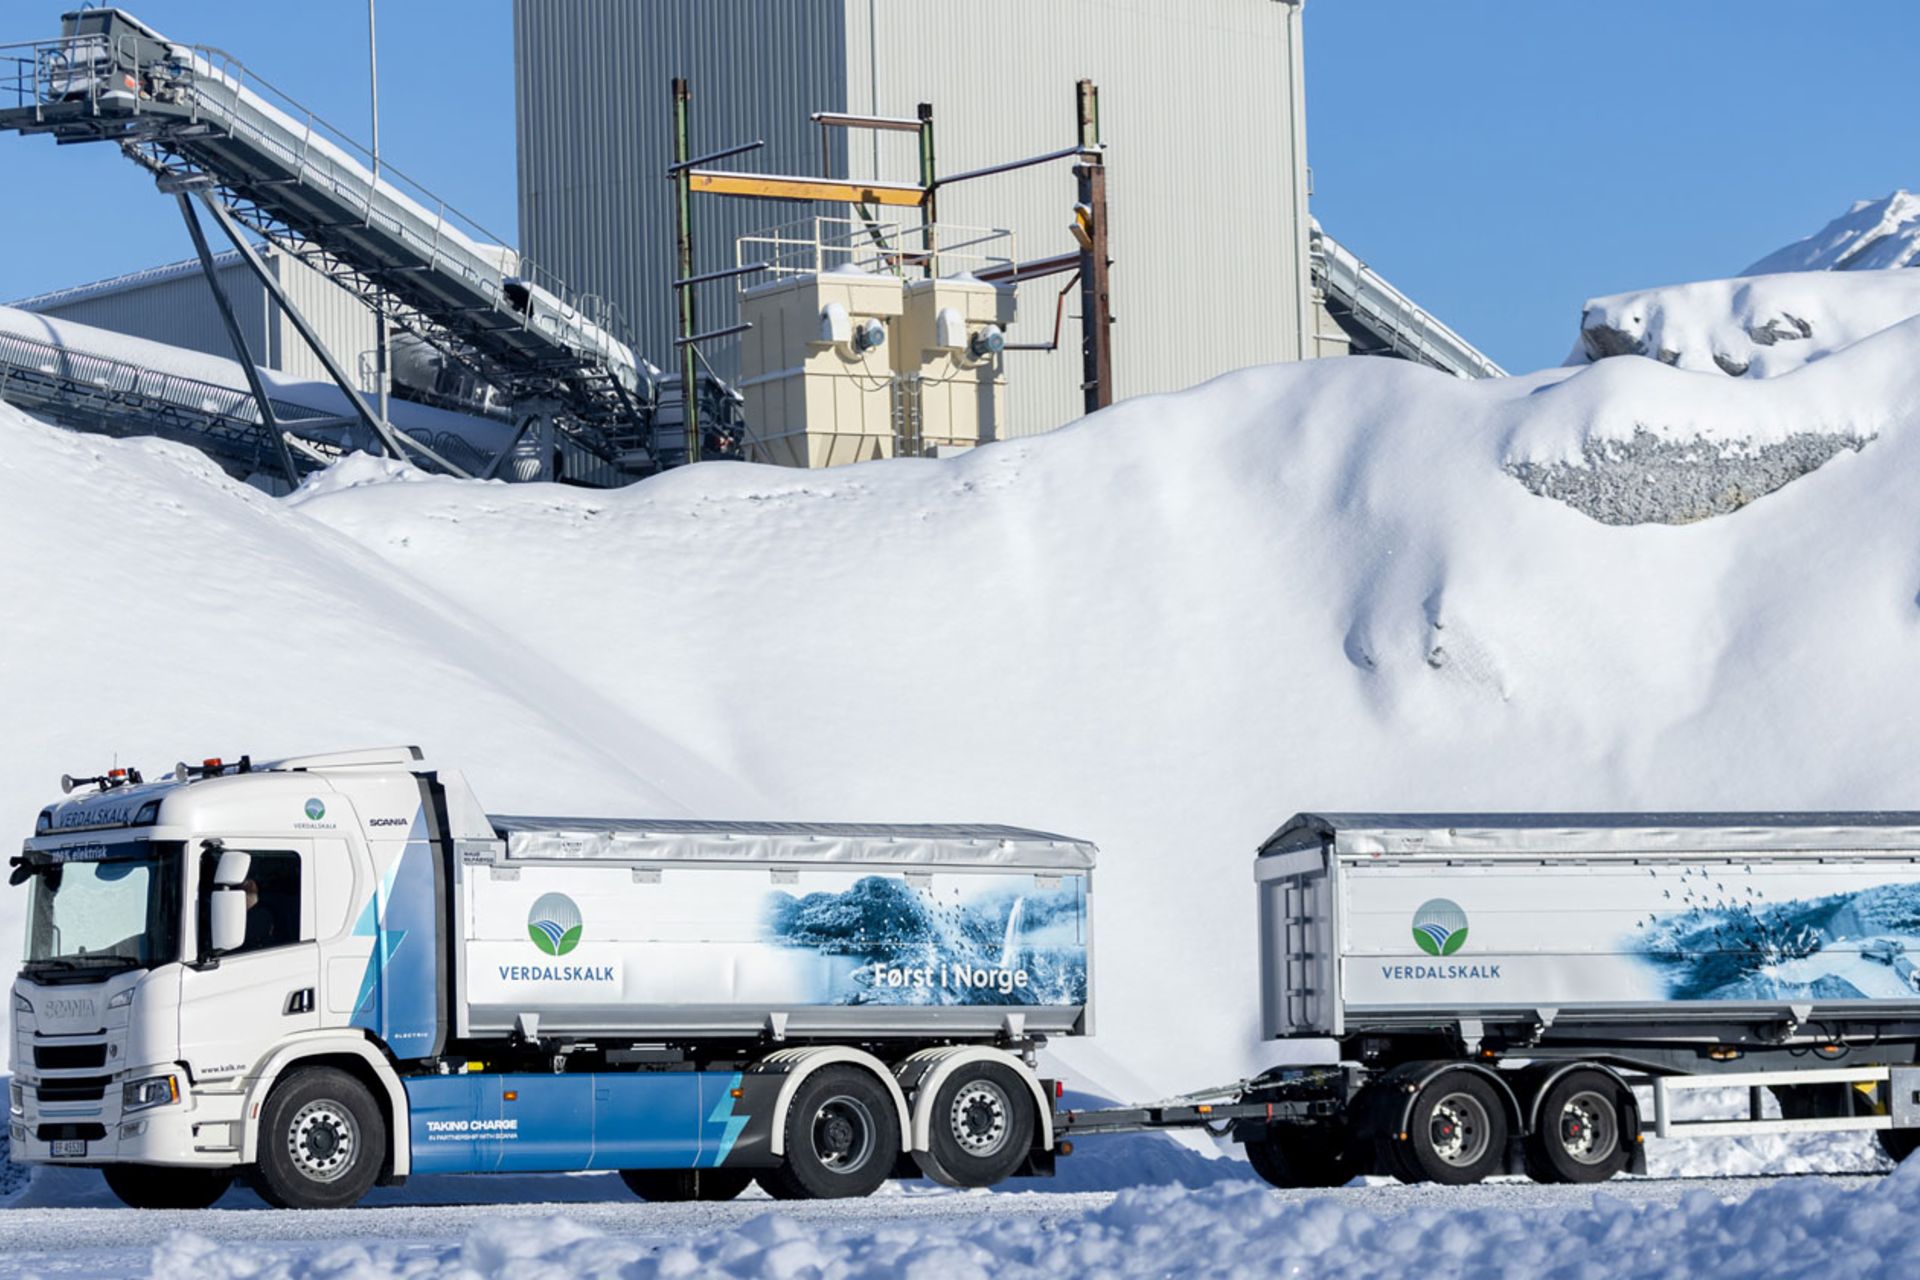 Scania hat den größten Elektro-Lkw Norwegens an den Kalksteinbruch von Verdalskalk in Verdal, Norwegen, geliefert. Mit einem Gesamtgewicht von 66 Tonnen wird er jährlich rund 120.000 Tonnen Kalk vom Steinbruch zum Hafen transportieren und dort verschiffen. Der bisherige Verbrauch an fossilen Brennstoffen auf der Strecke wird um 58.800 Liter und der CO2-Ausstoß um 156 Tonnen gesenkt.